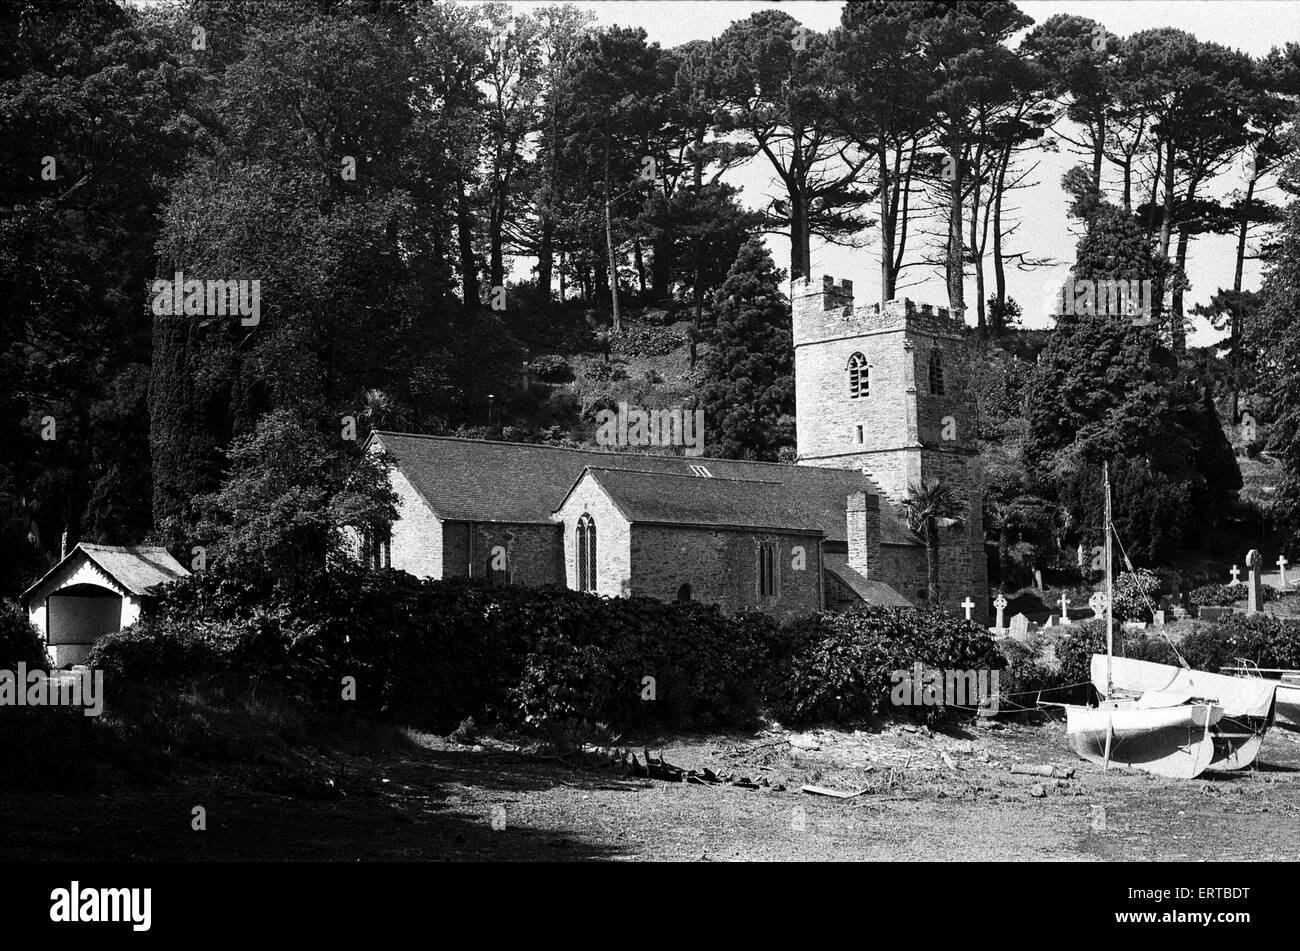 Das 13. Jahrhundert St. Just in Roseland Kirche in St Just in Roseland, Cornwall. Die Kirche befindet sich im Set in riverside Gärten mit subtropischen Büschen und Bäumen, von die viele Arten selten in England sind üppig bepflanzt. Das Dorf liegt sechs Meilen (10 km) südlich von Truro und zwei Meilen (3 Kilometer) nördlich von St Mawes. Juni 1975. Stockfoto